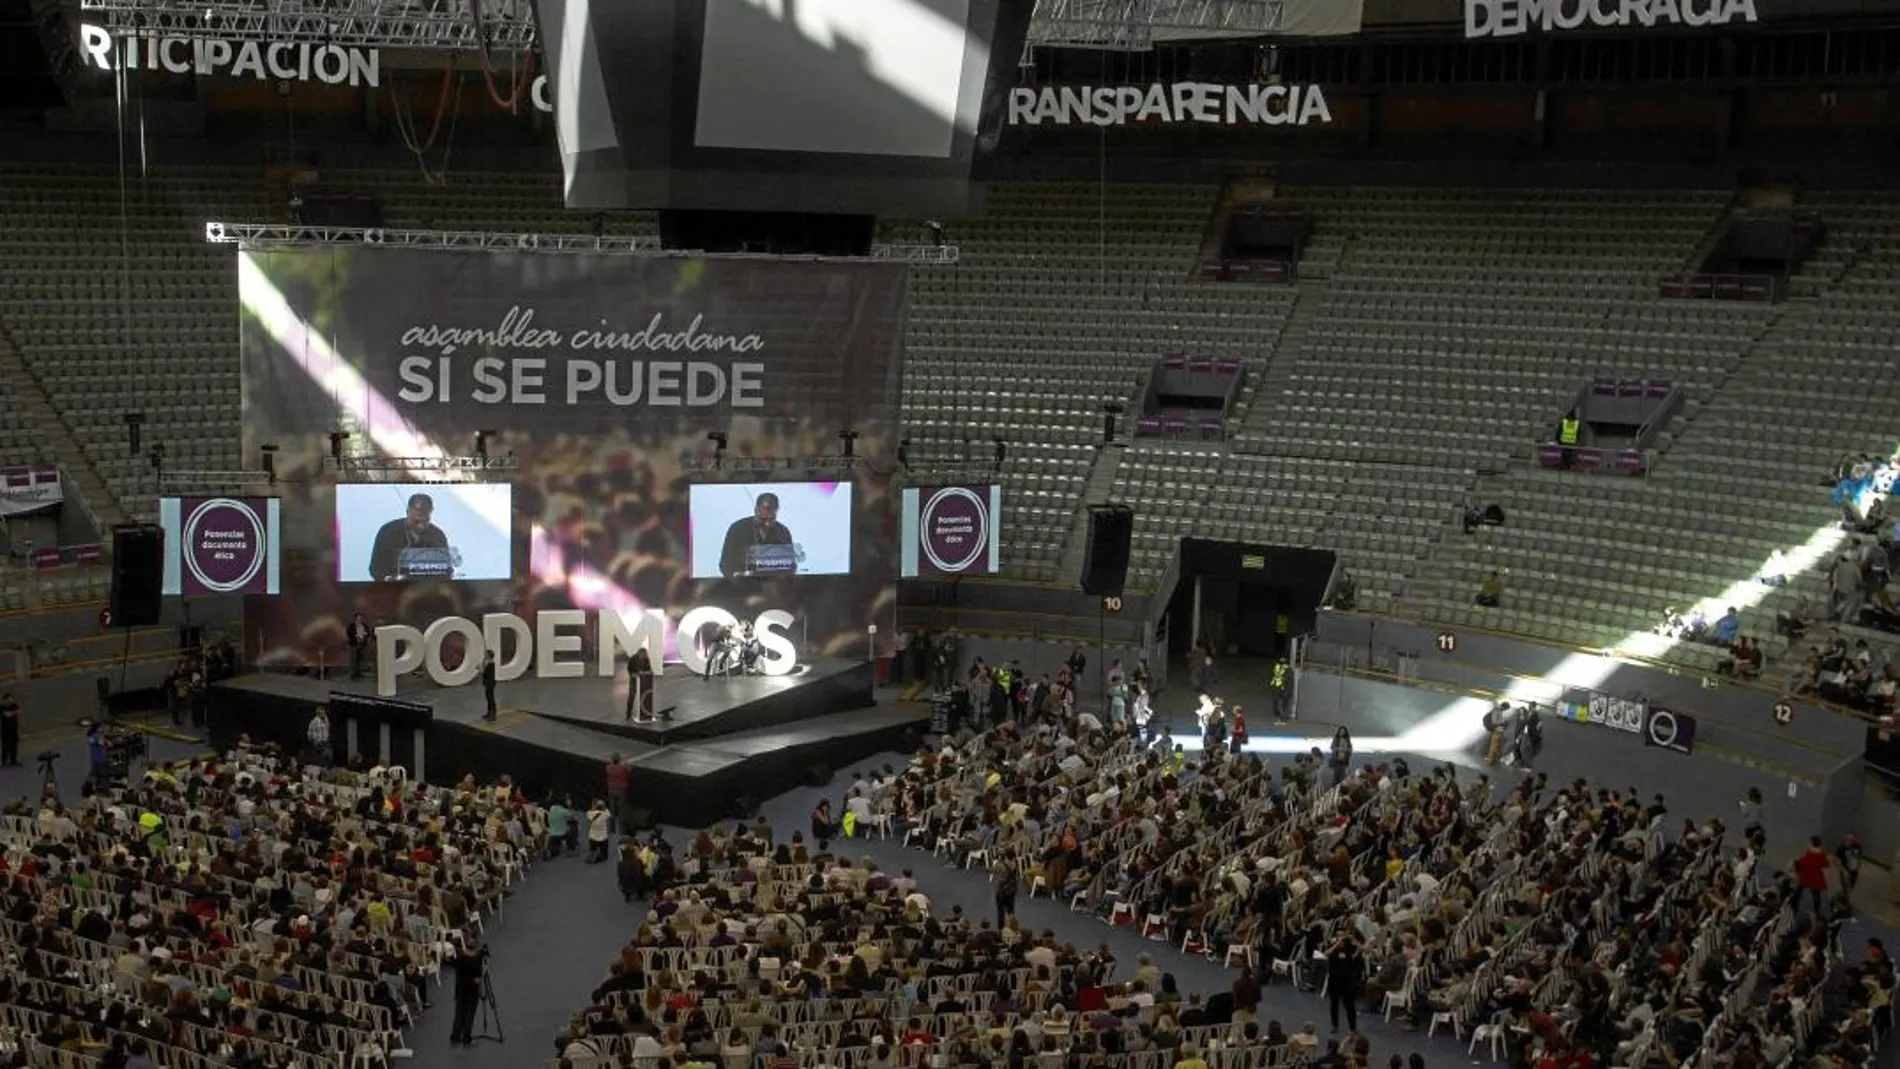 La formación morada, Podemos, durante la celebración de uno de sus congresos